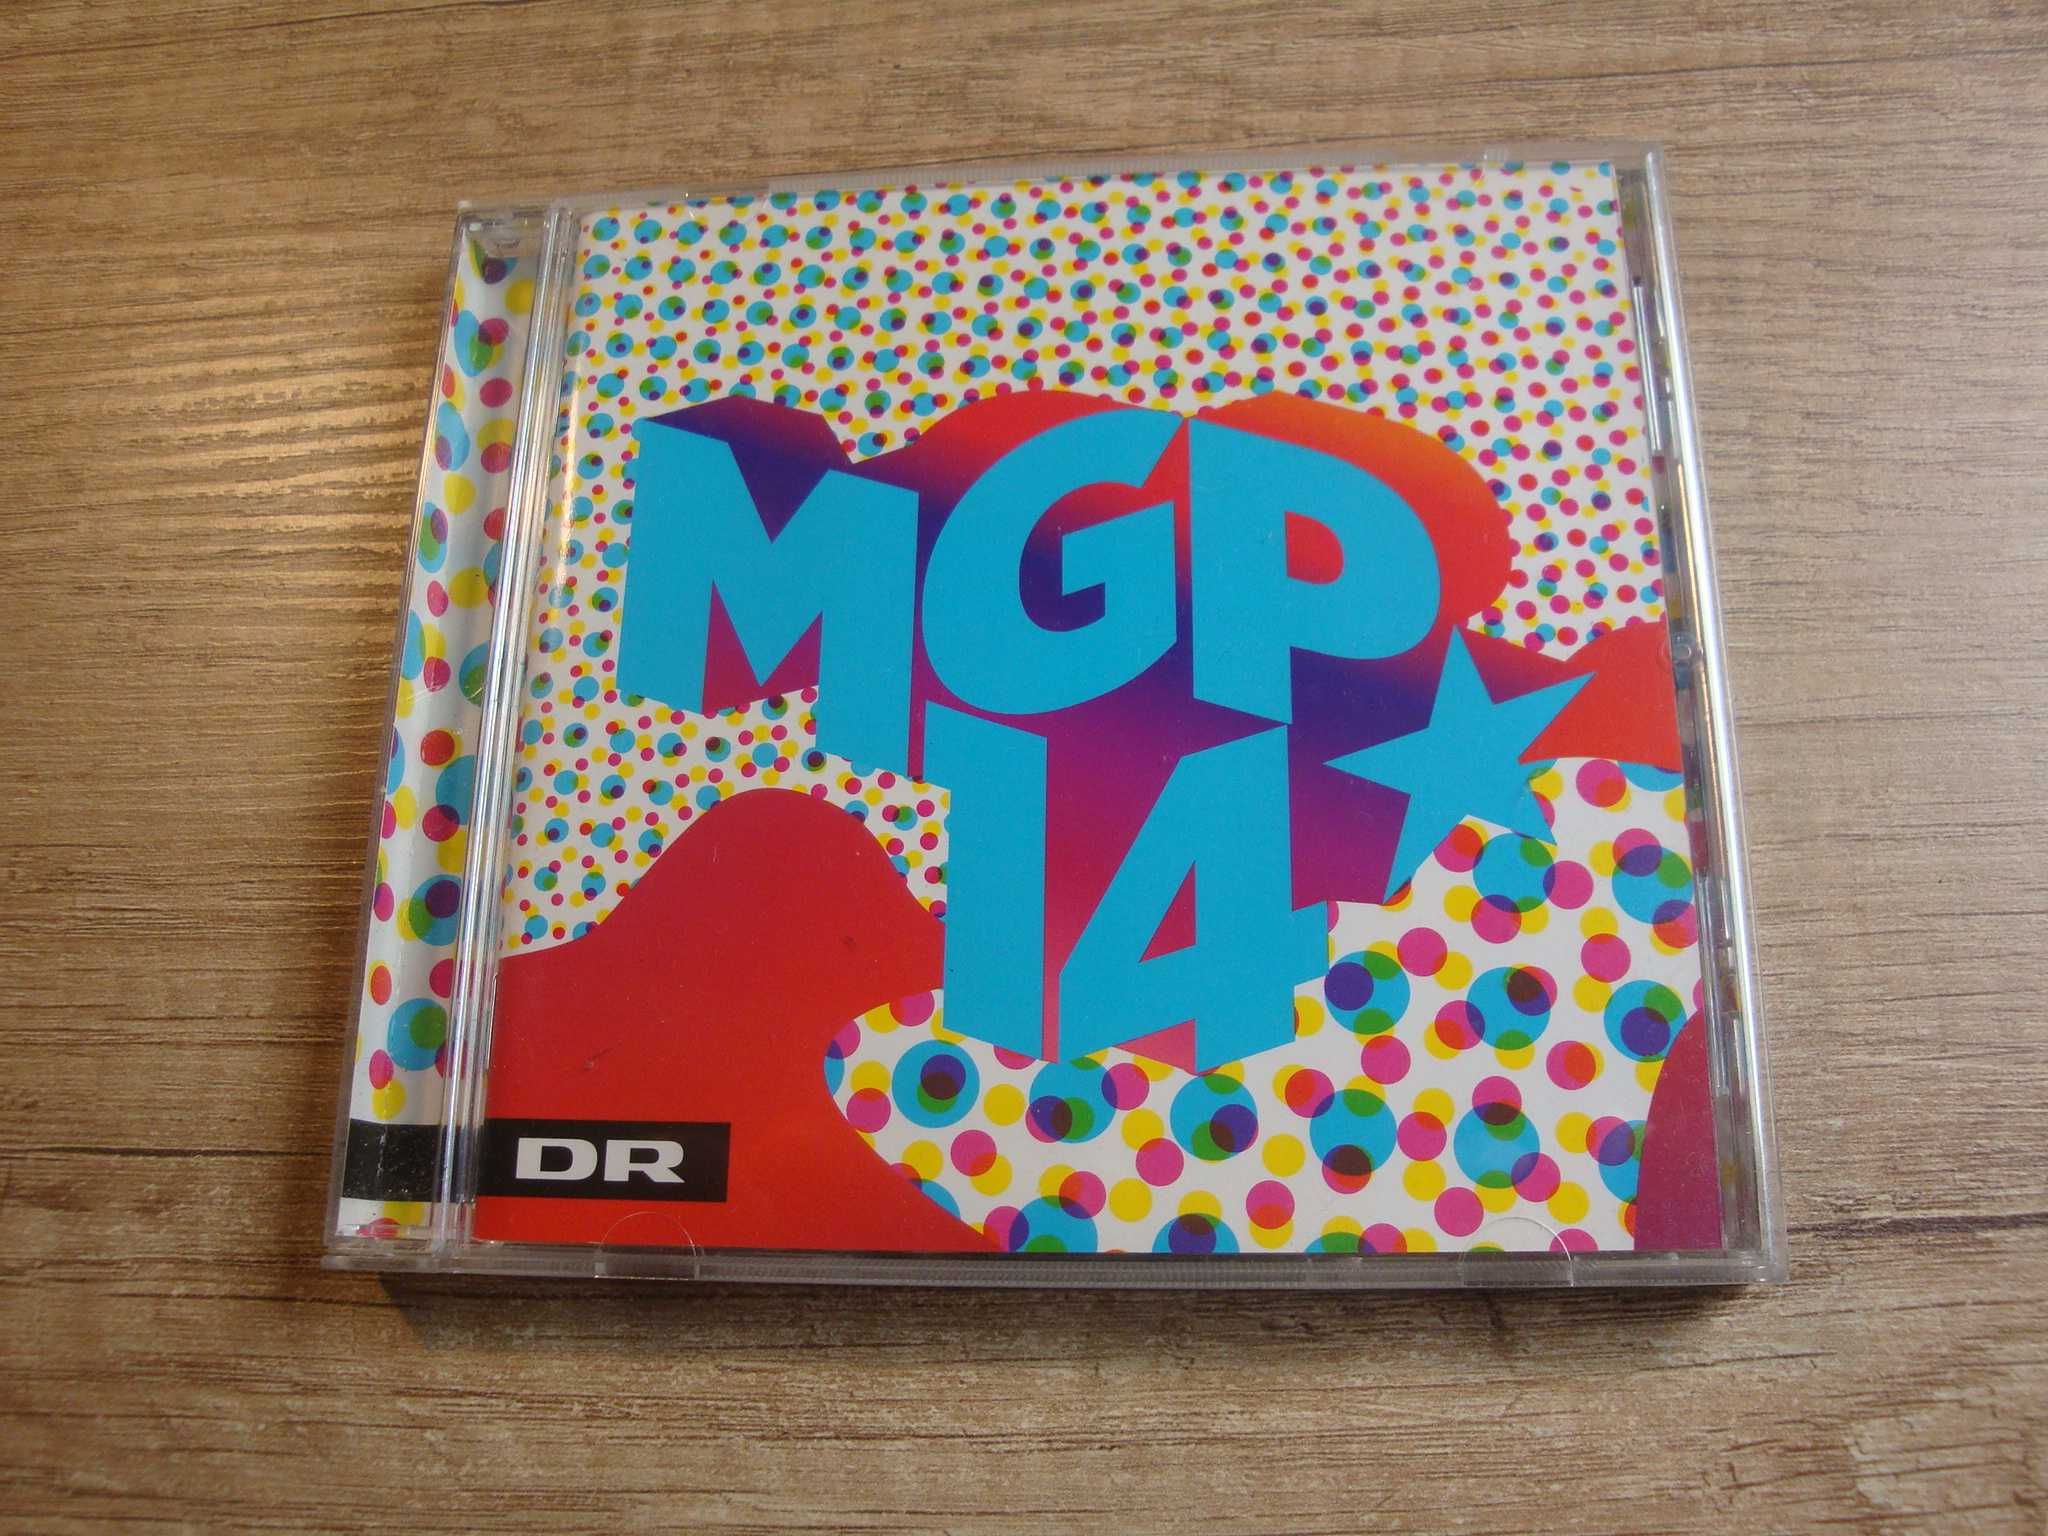 Various – MGP 2014 (MGP Allstars 2014)